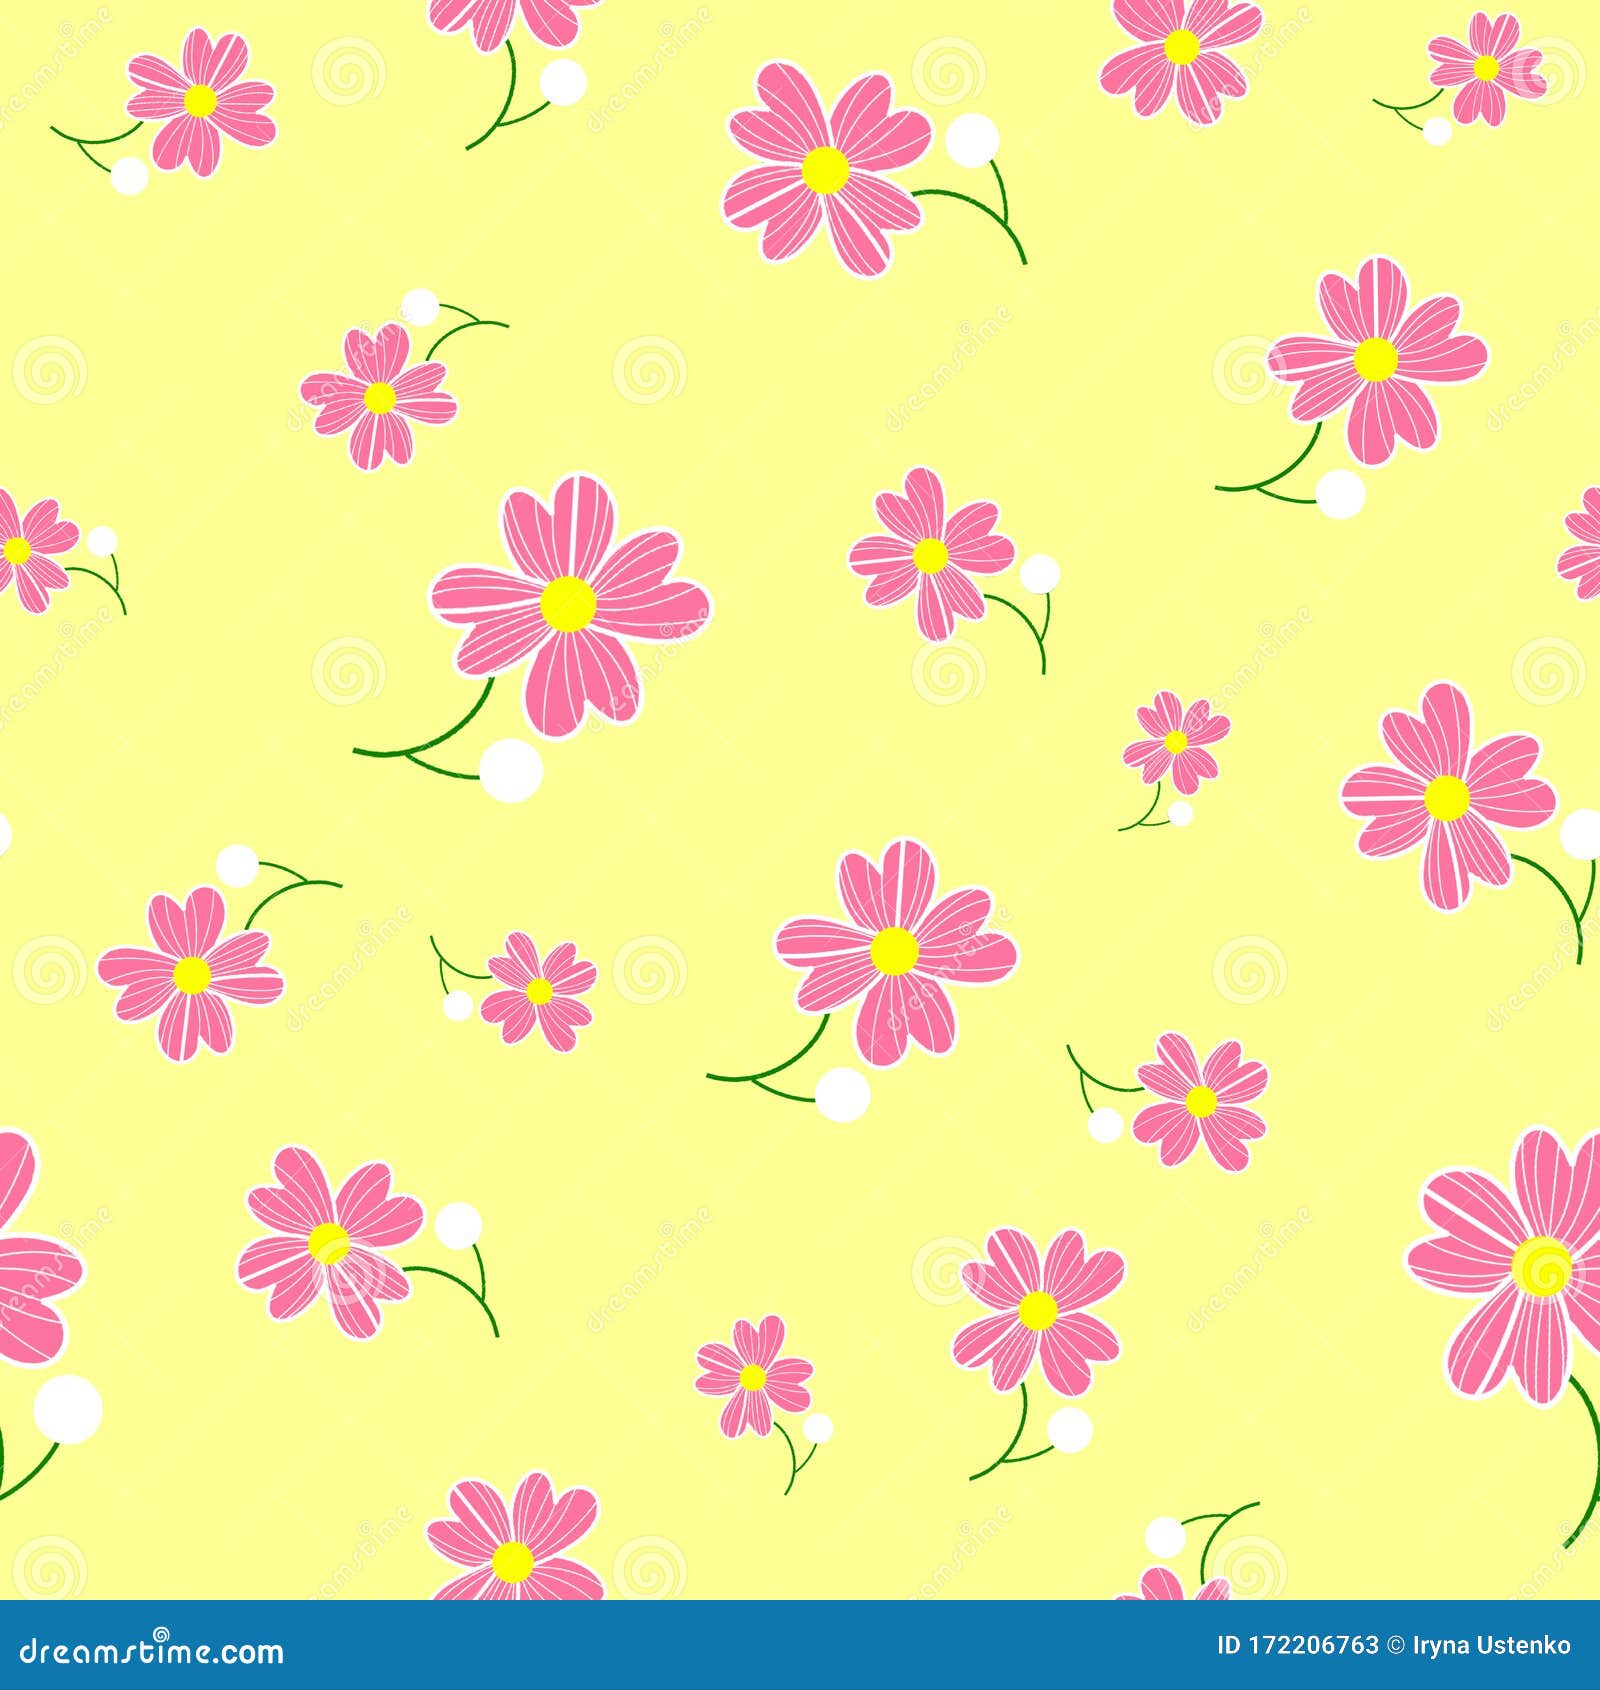 无缝可爱的花朵图案背景黄色背景中的粉红色花卉图案母亲节 3月8日库存例证 插画包括有黄色背景中的粉红色花卉图案 母亲节 3月8日